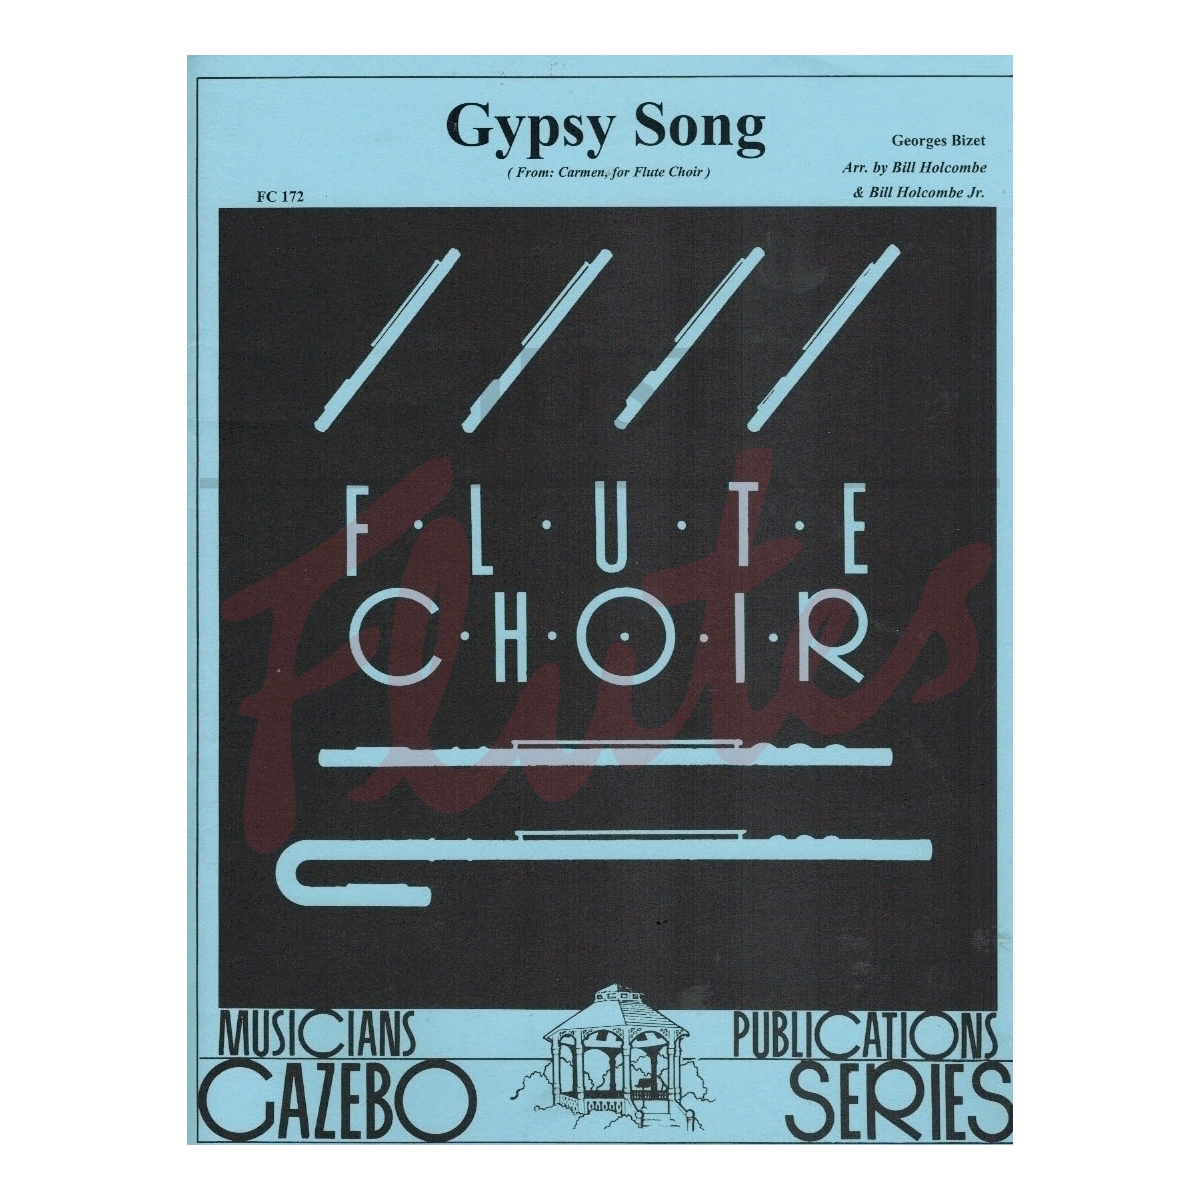 Gypsy Song [Flute Choir]